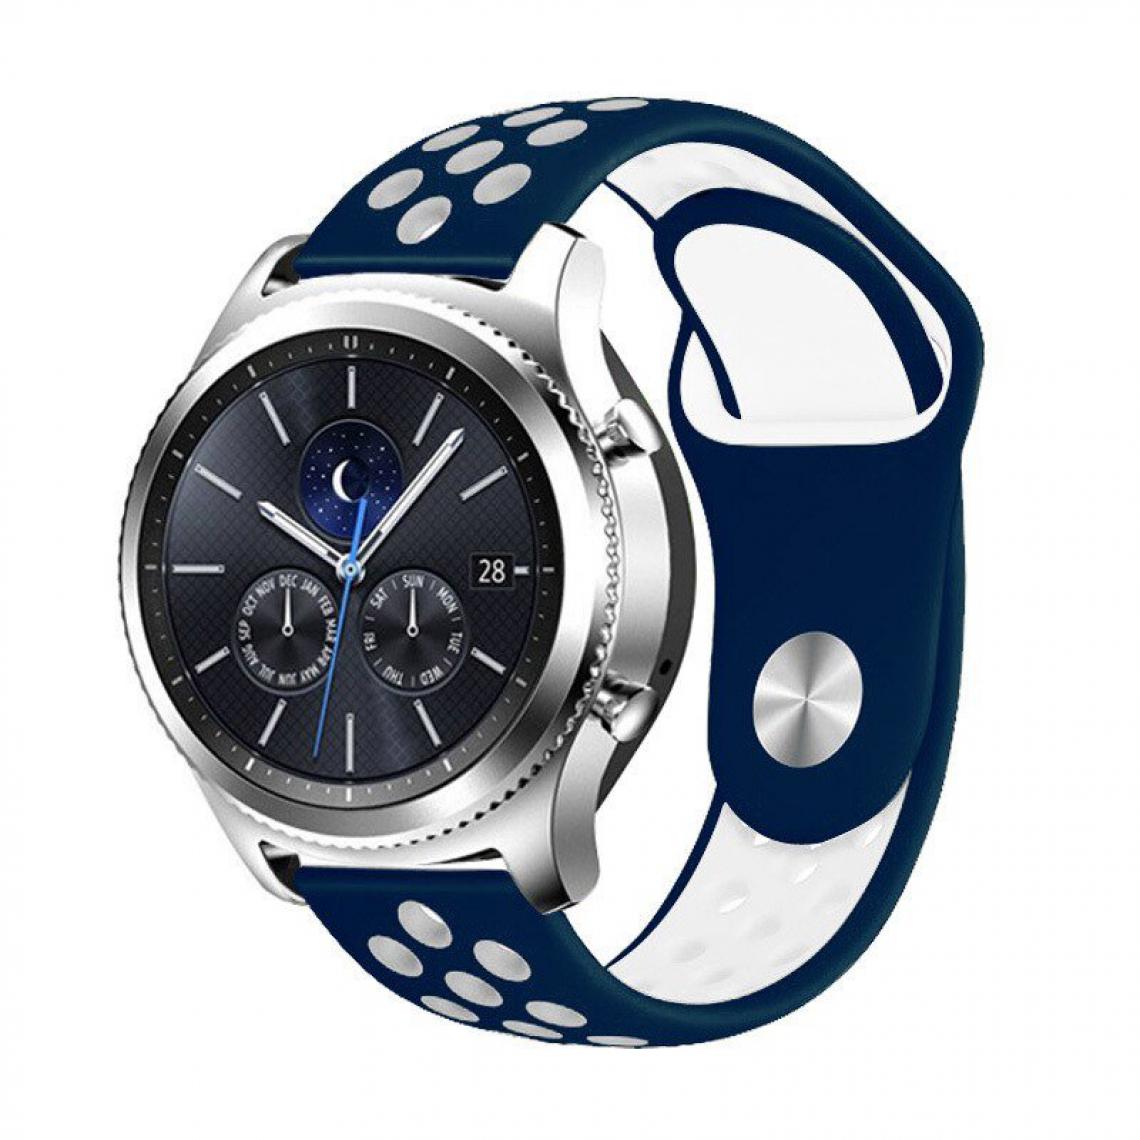 Phonecare - Bracelet SportyStyle pour Honor GS Pro - Bleu foncé / Blanc - Autres accessoires smartphone